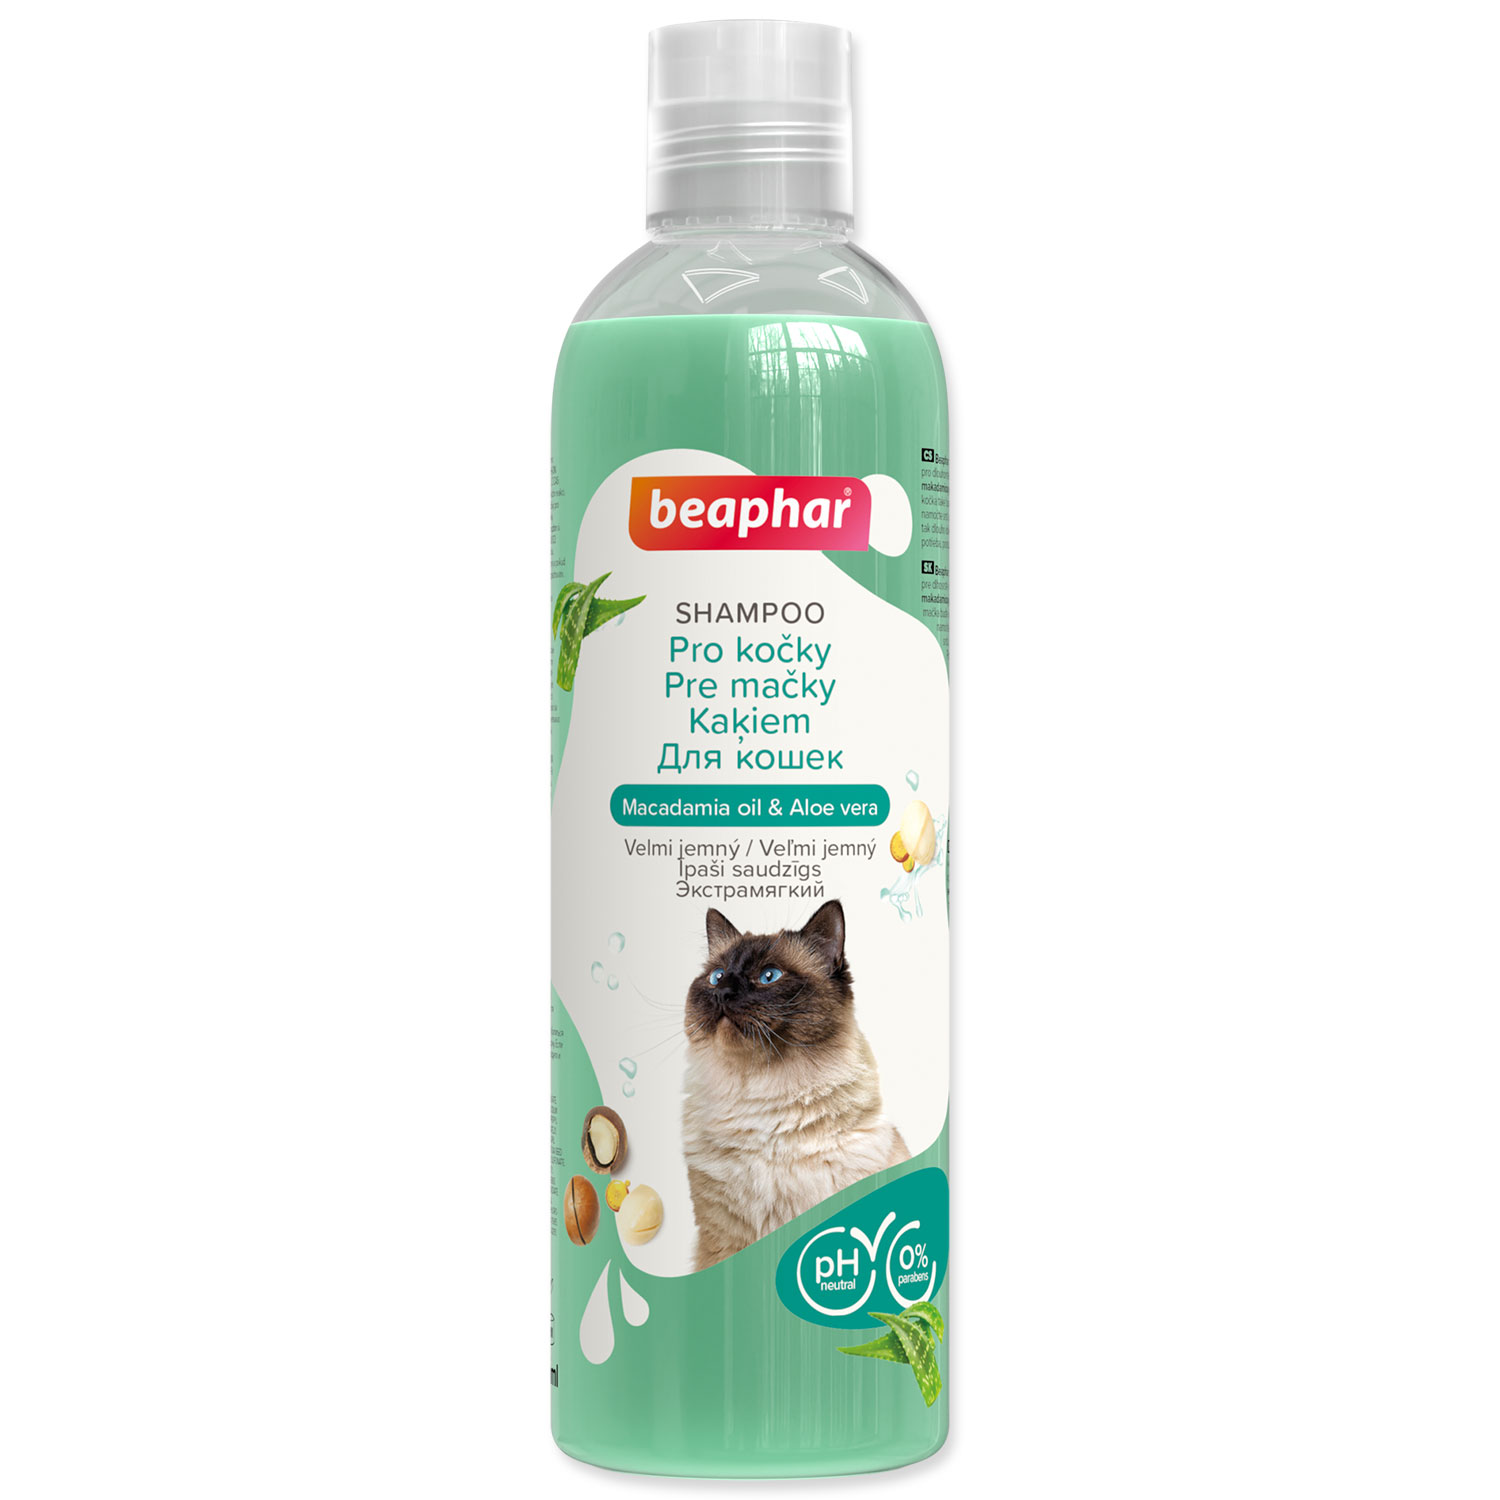 Šampon BEAPHAR pro kočky, 250 ml